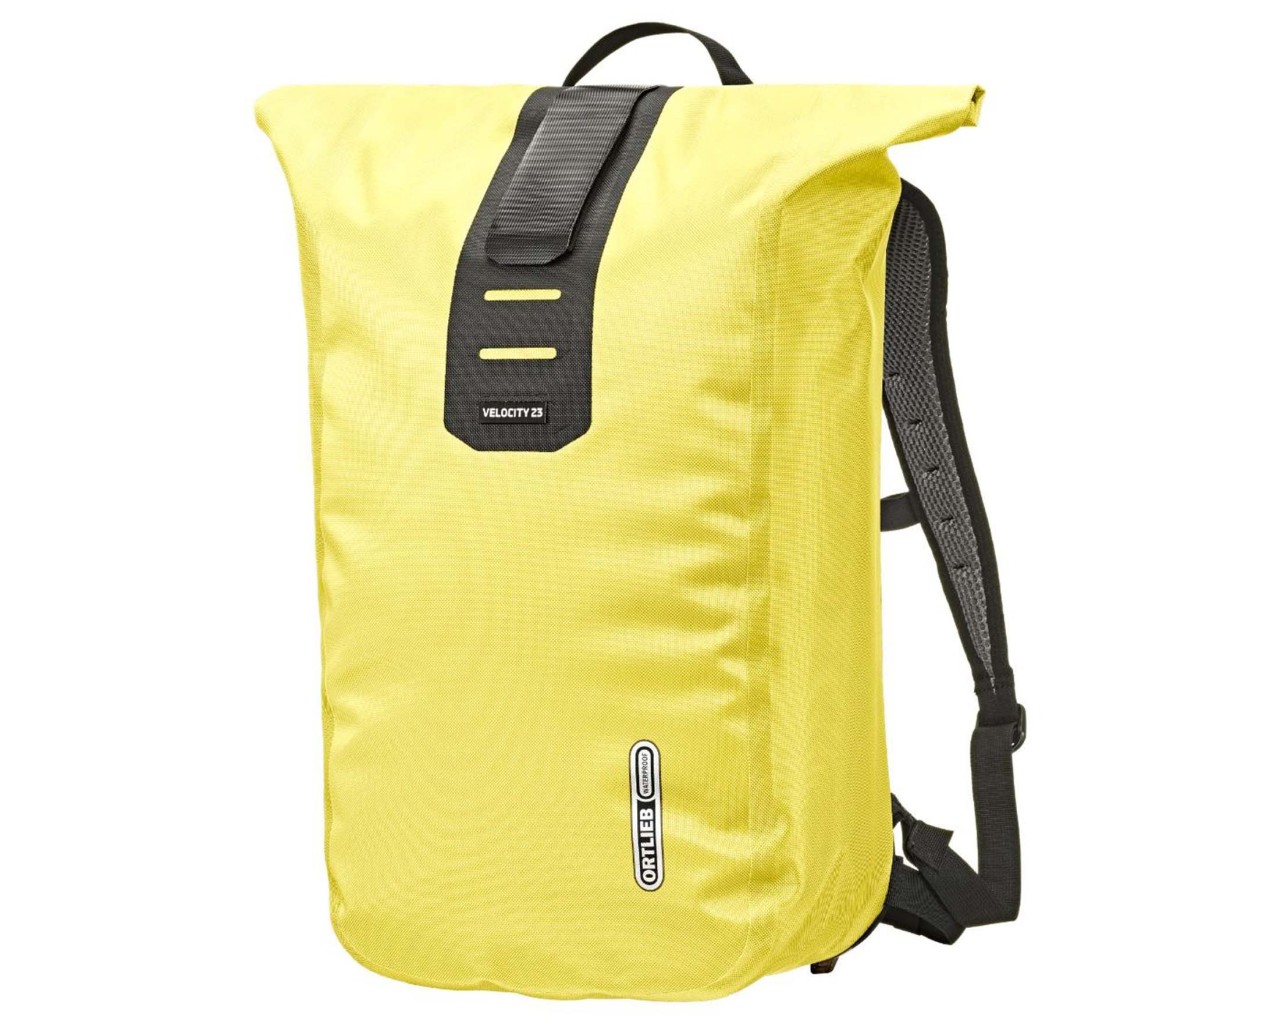 Ortlieb Velocity PS - 23 litres waterproof Bicycle Backpack | lemon sorbet